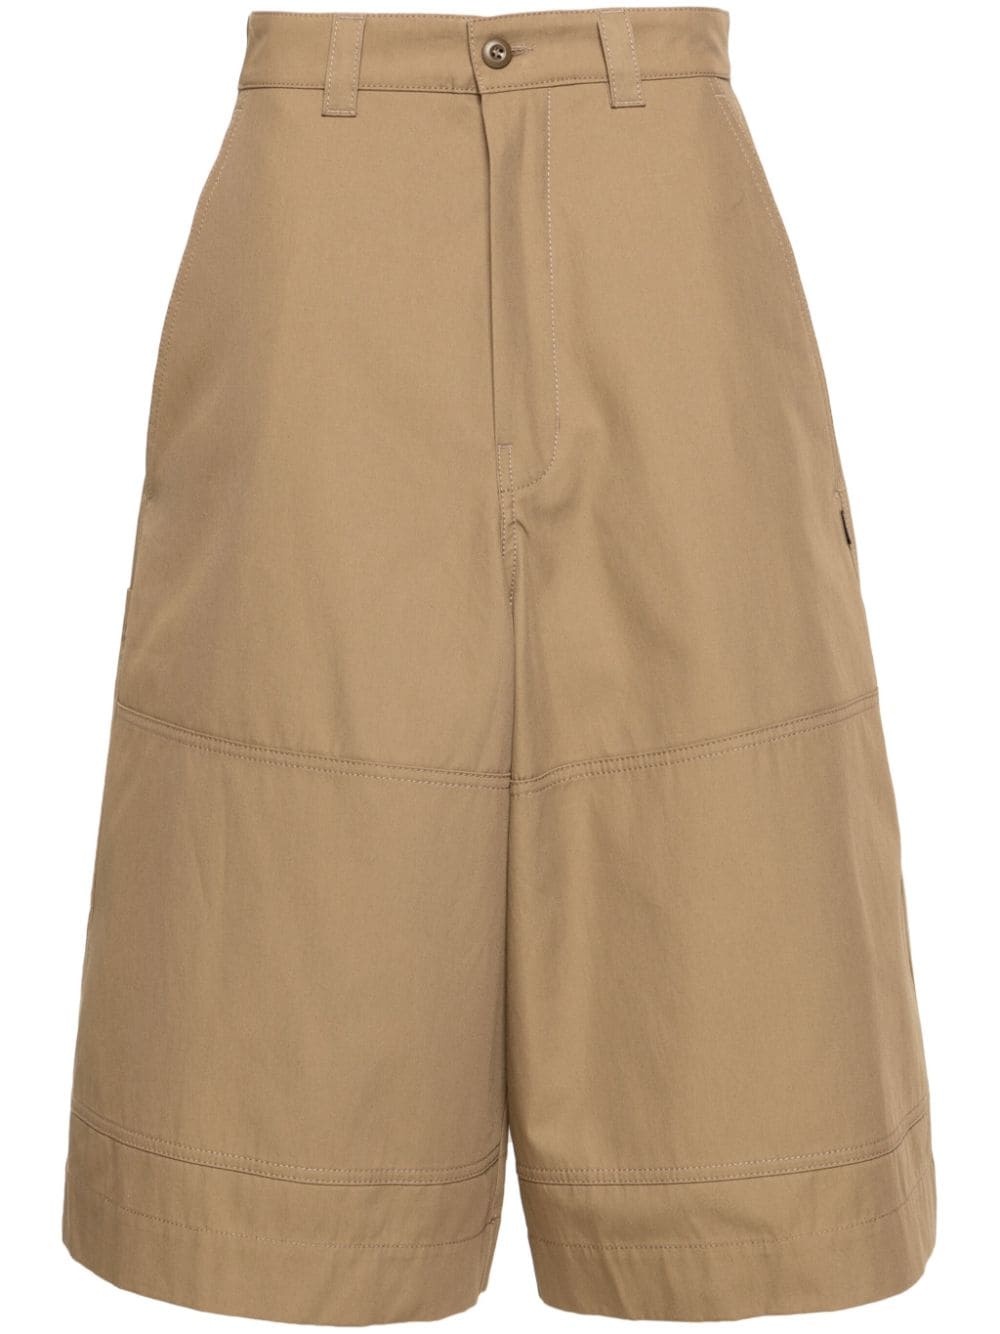 single-stitch chino shorts - 1